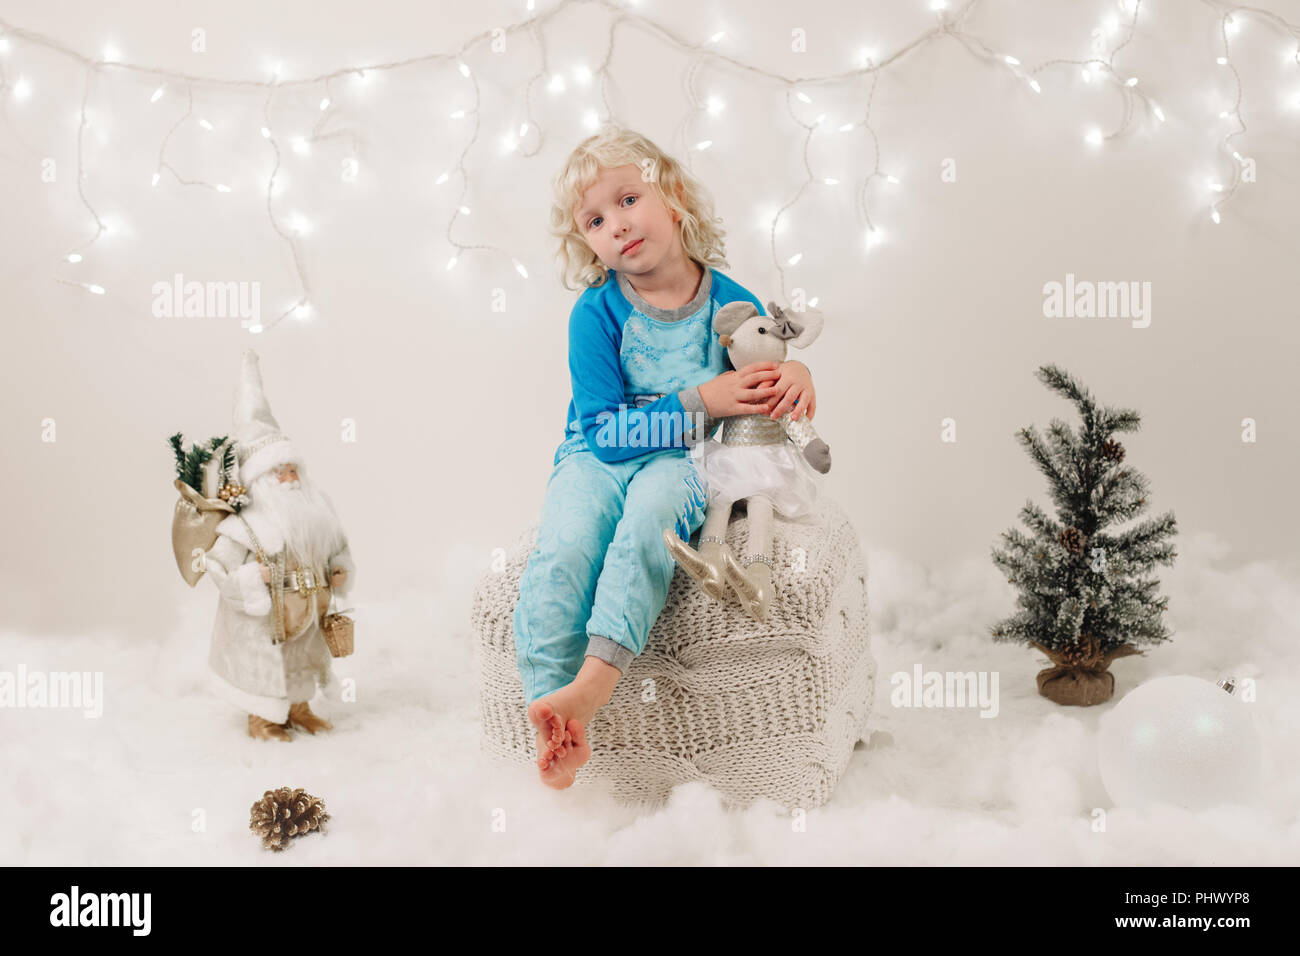 Portrait von blond Kaukasier Kind Mädchen mit blauen Augen sitzen mit Spielzeug Weihnachten oder Neujahr Stockfoto